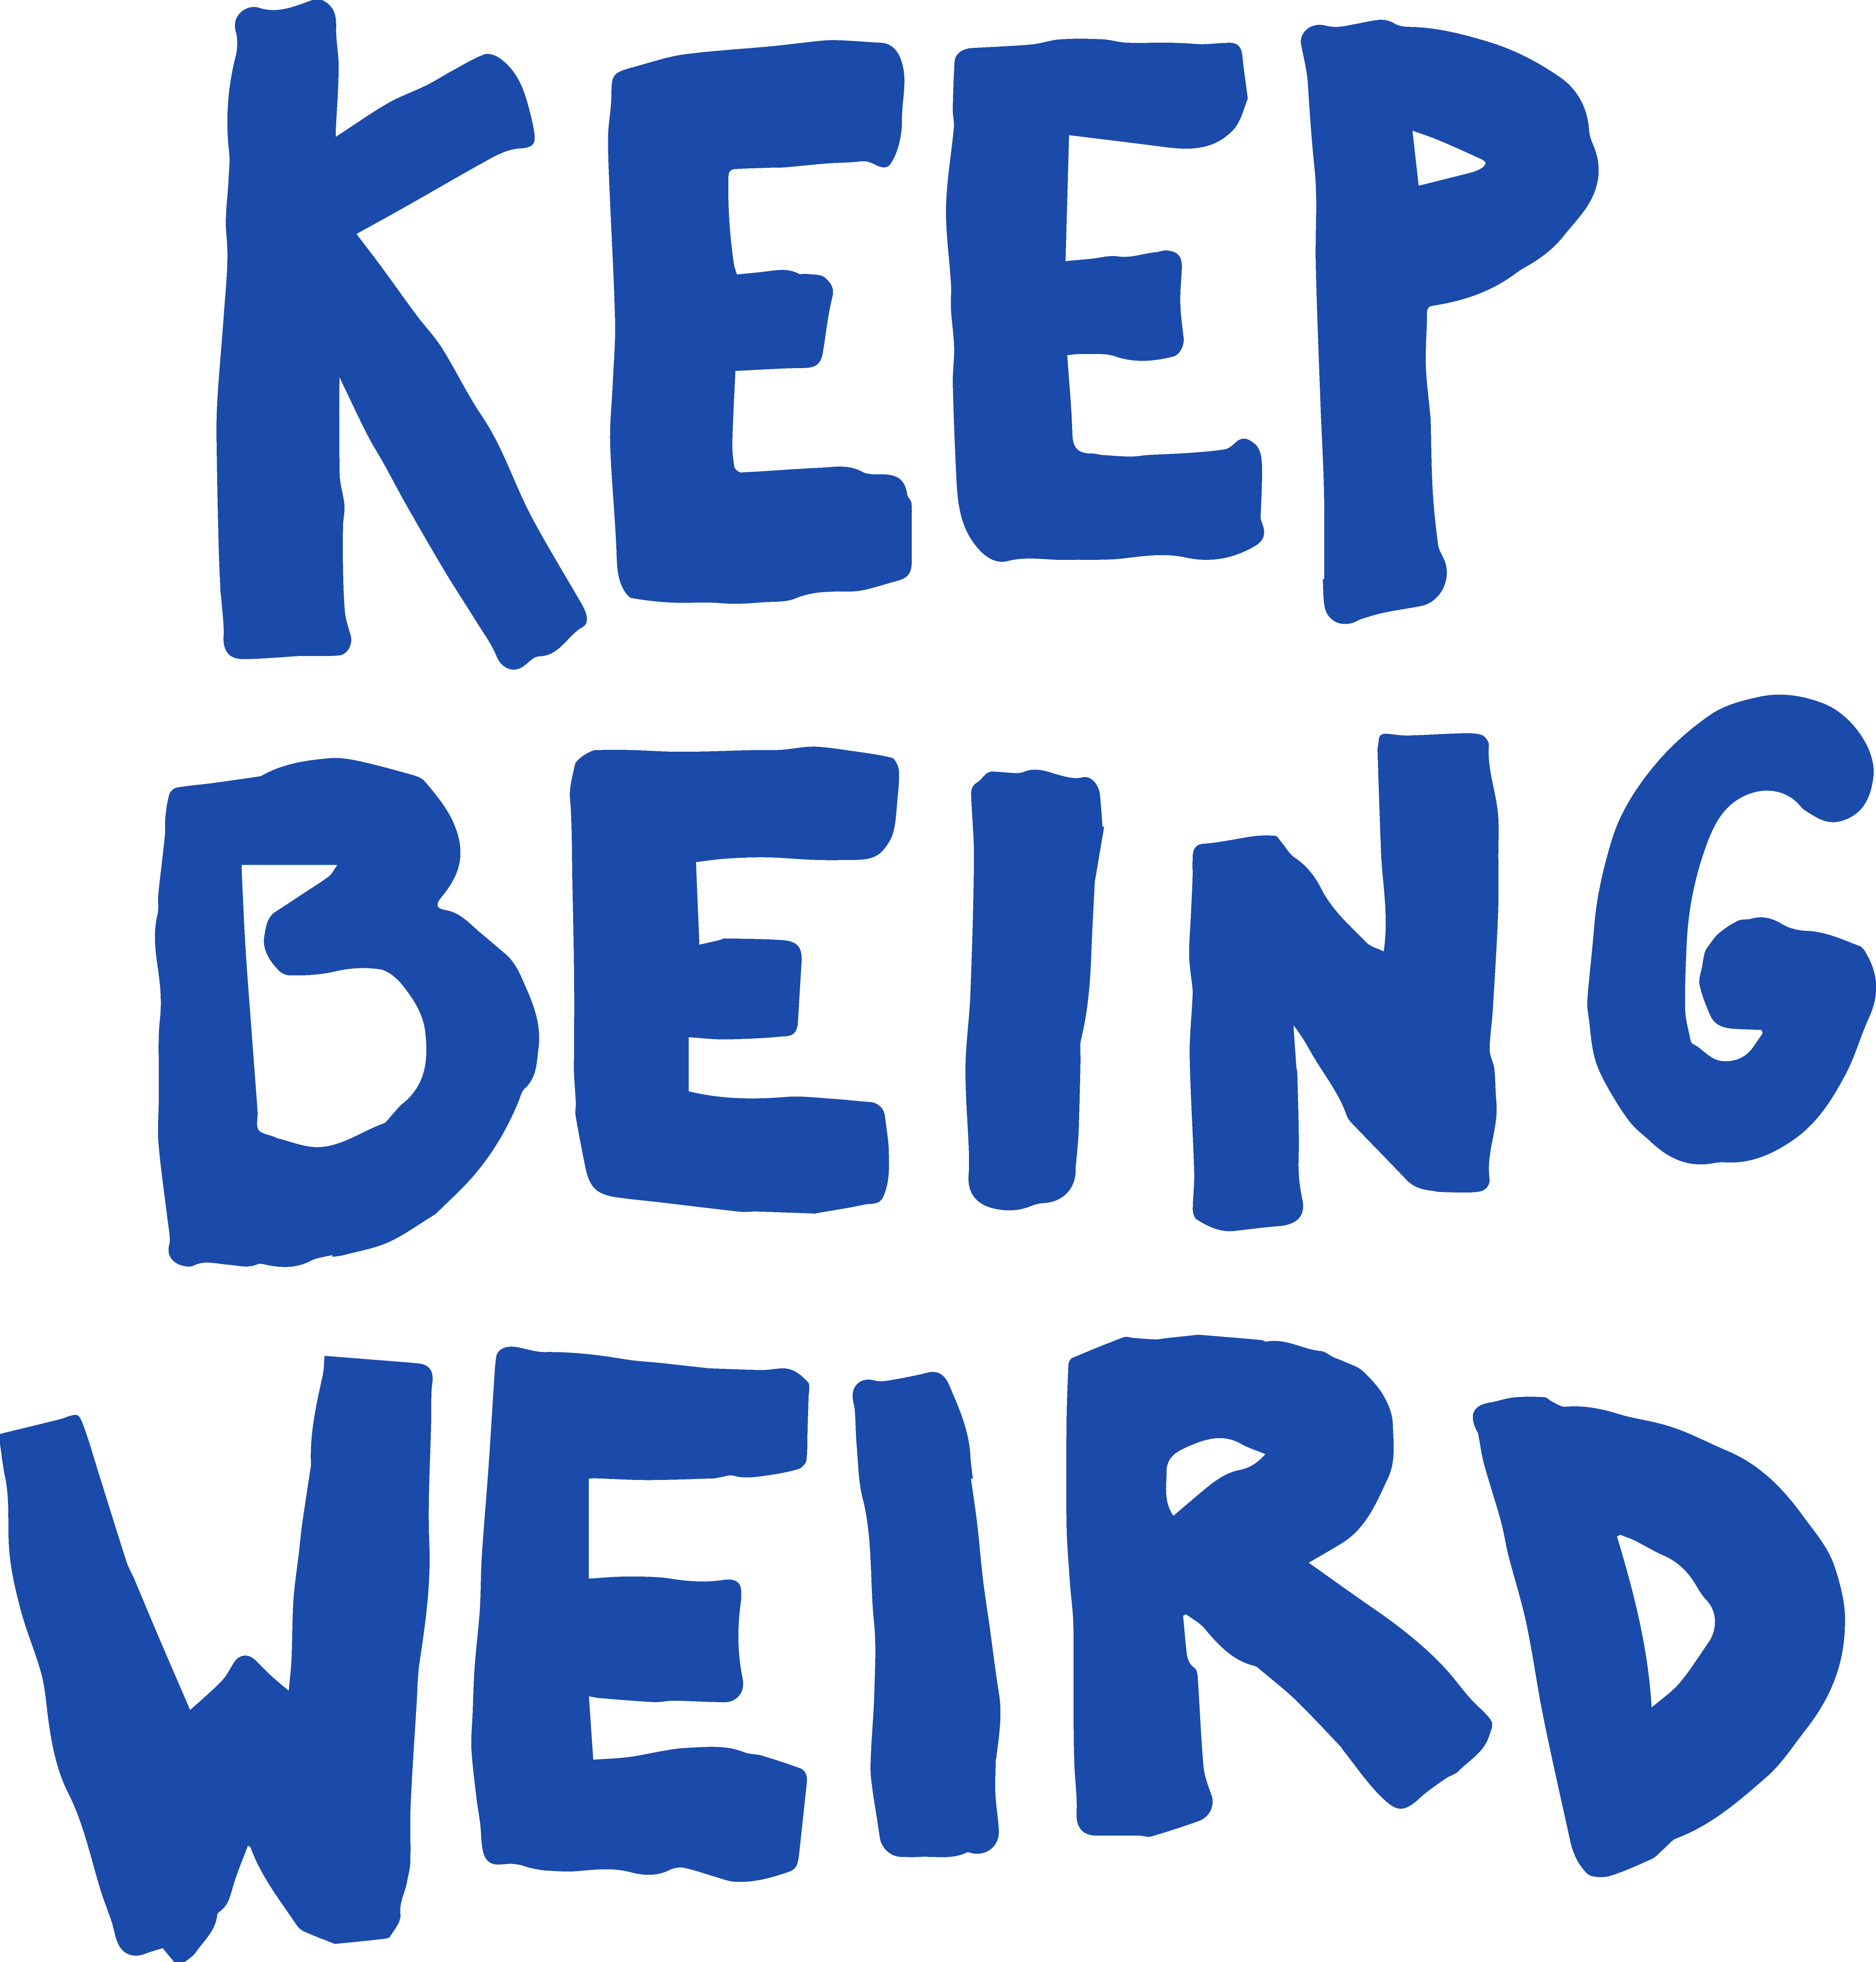 Hand written text that says Keep Being Weird